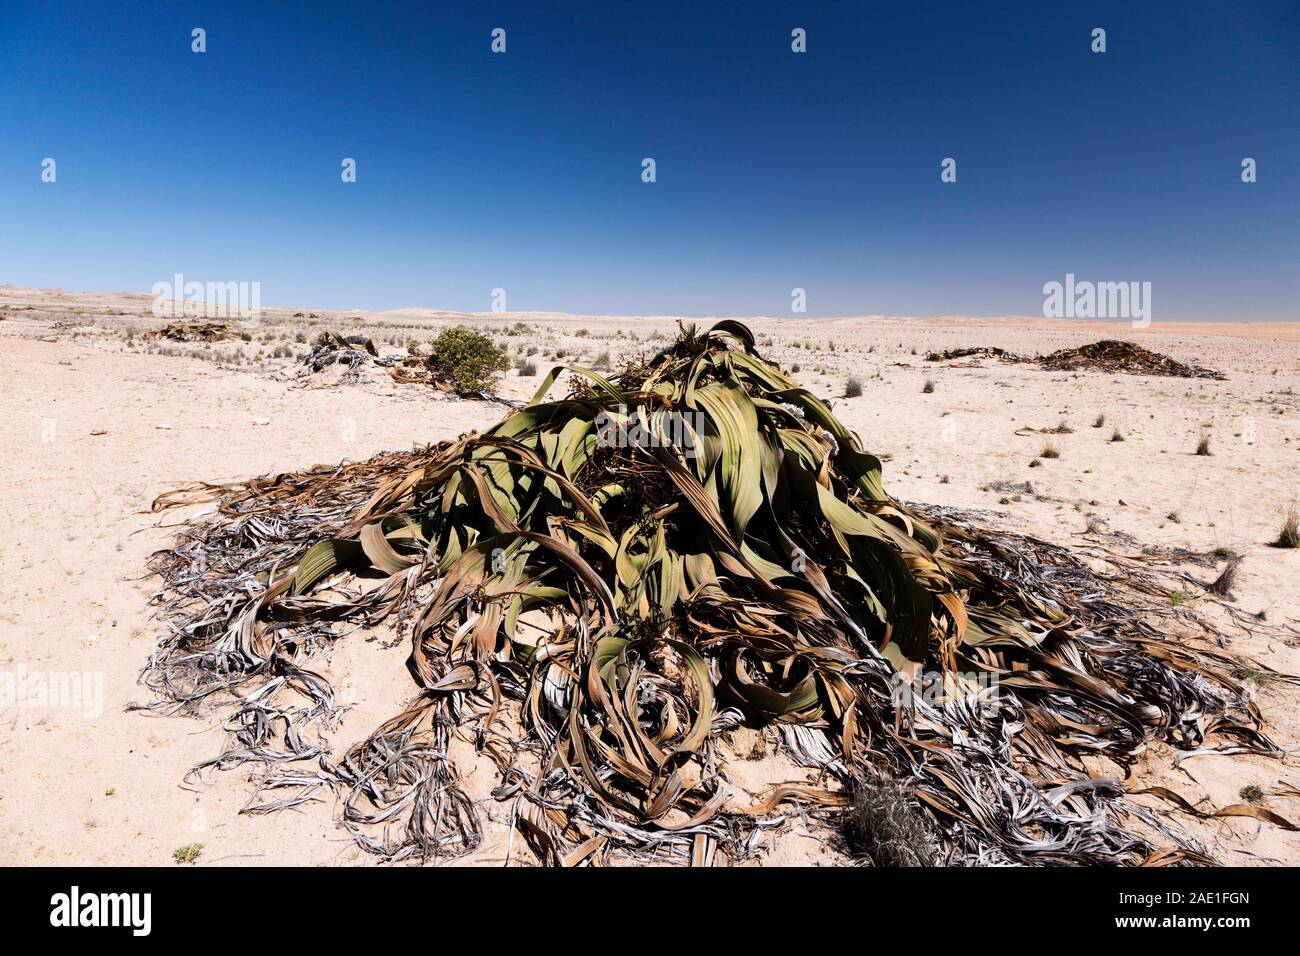 Welwitschia, plante sauvage du désert, 'Welwitschia Drive' près de Swakopmund, désert du Namib, Namibie, Afrique australe, Afrique Banque D'Images